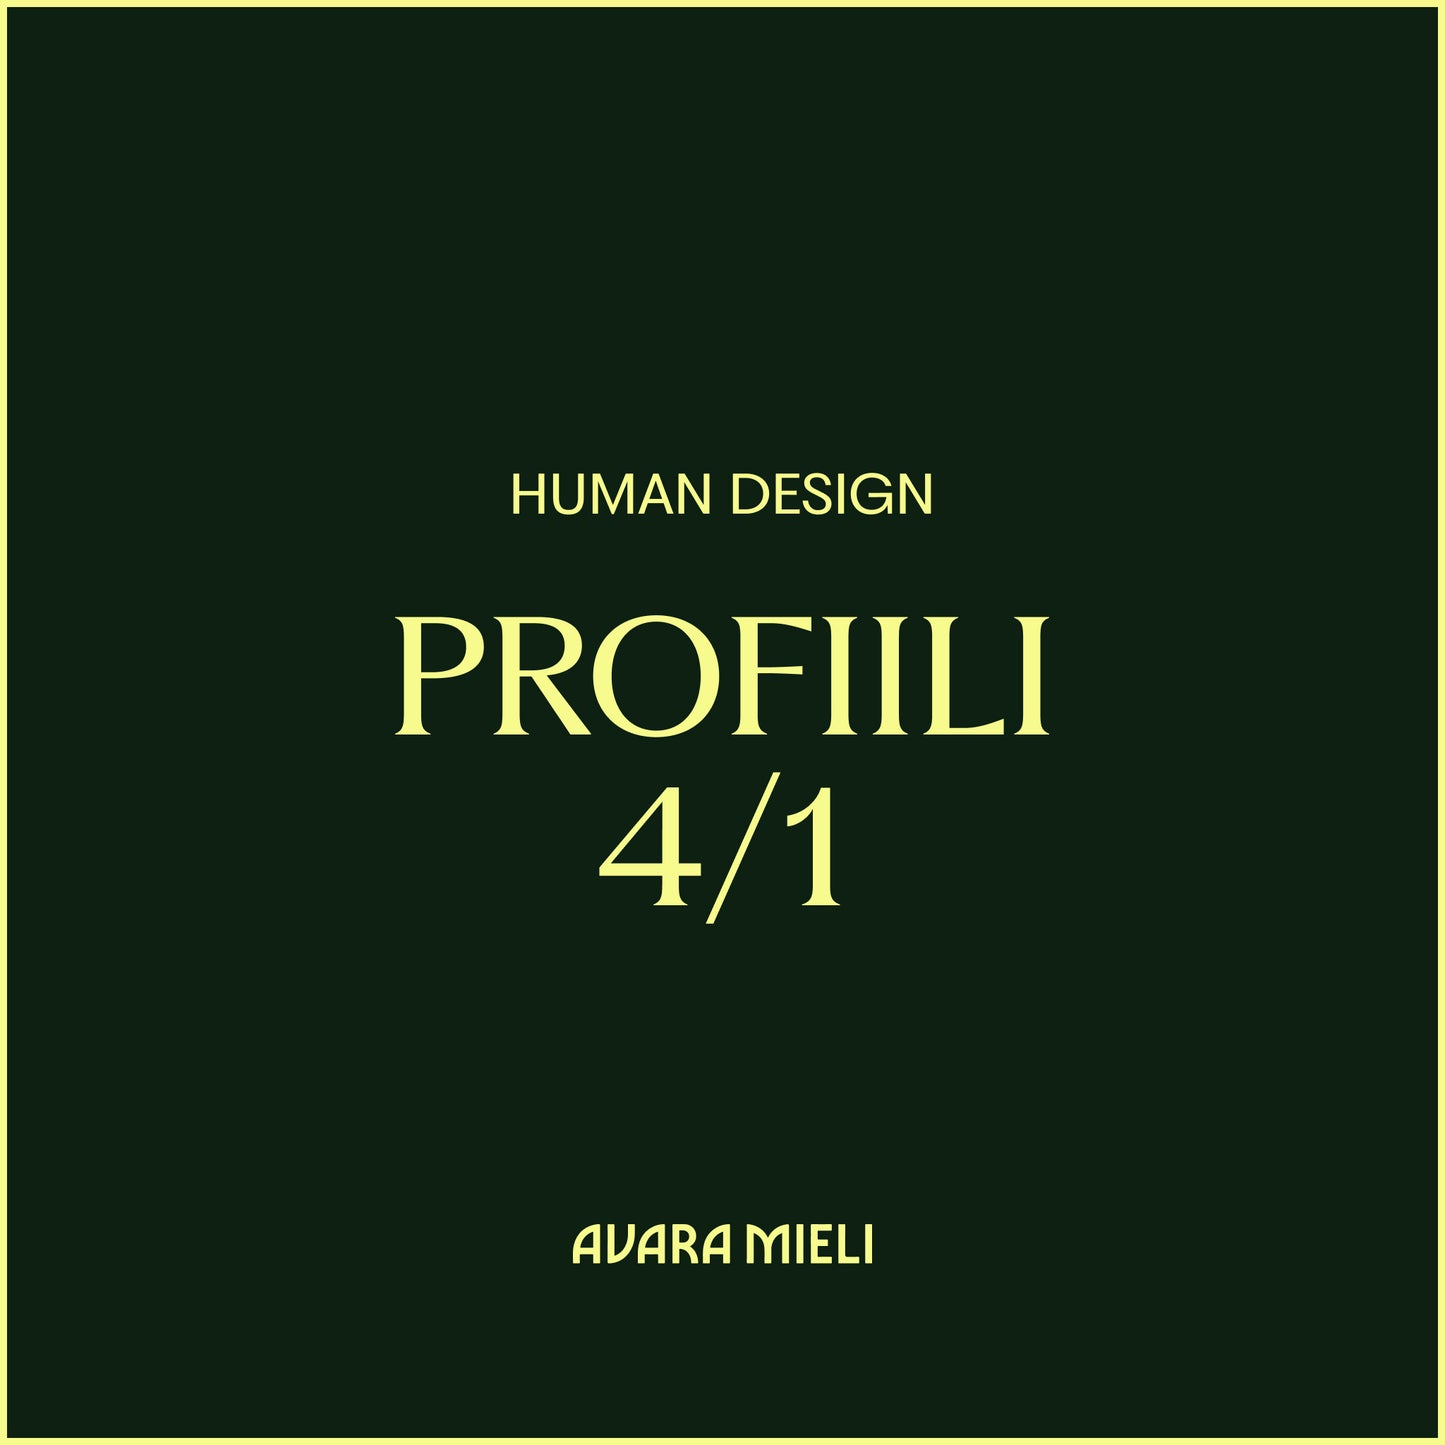 Human Design Profiili 4/1